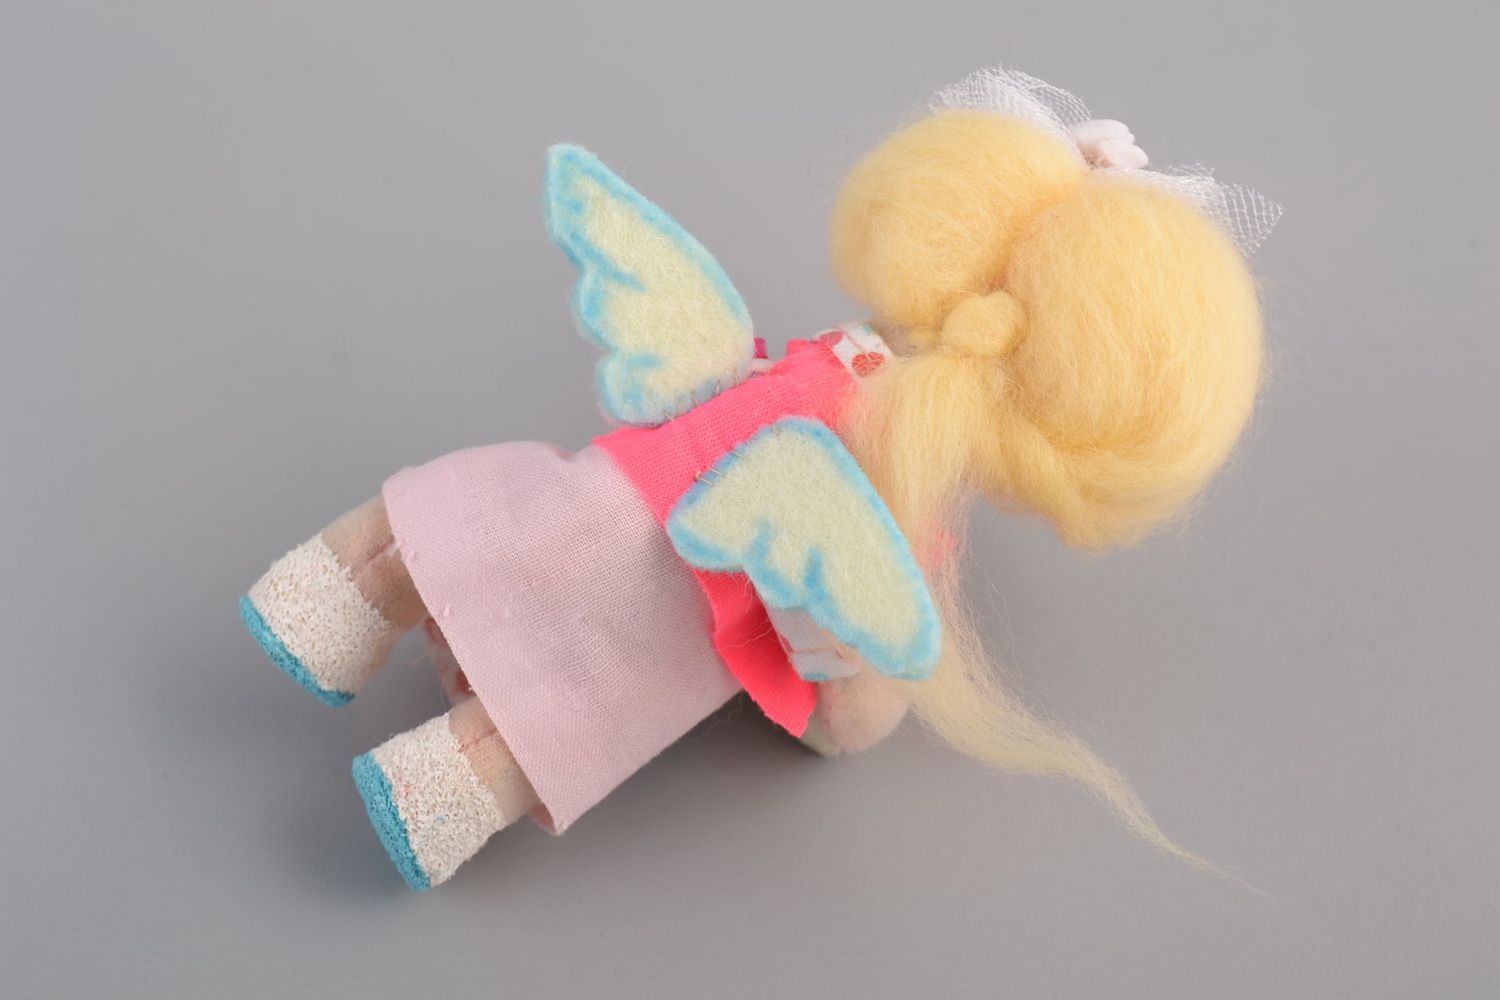 Кукла из фетра мягкая интерьерная игрушка ручной работы Девочка со сладостями фото 3